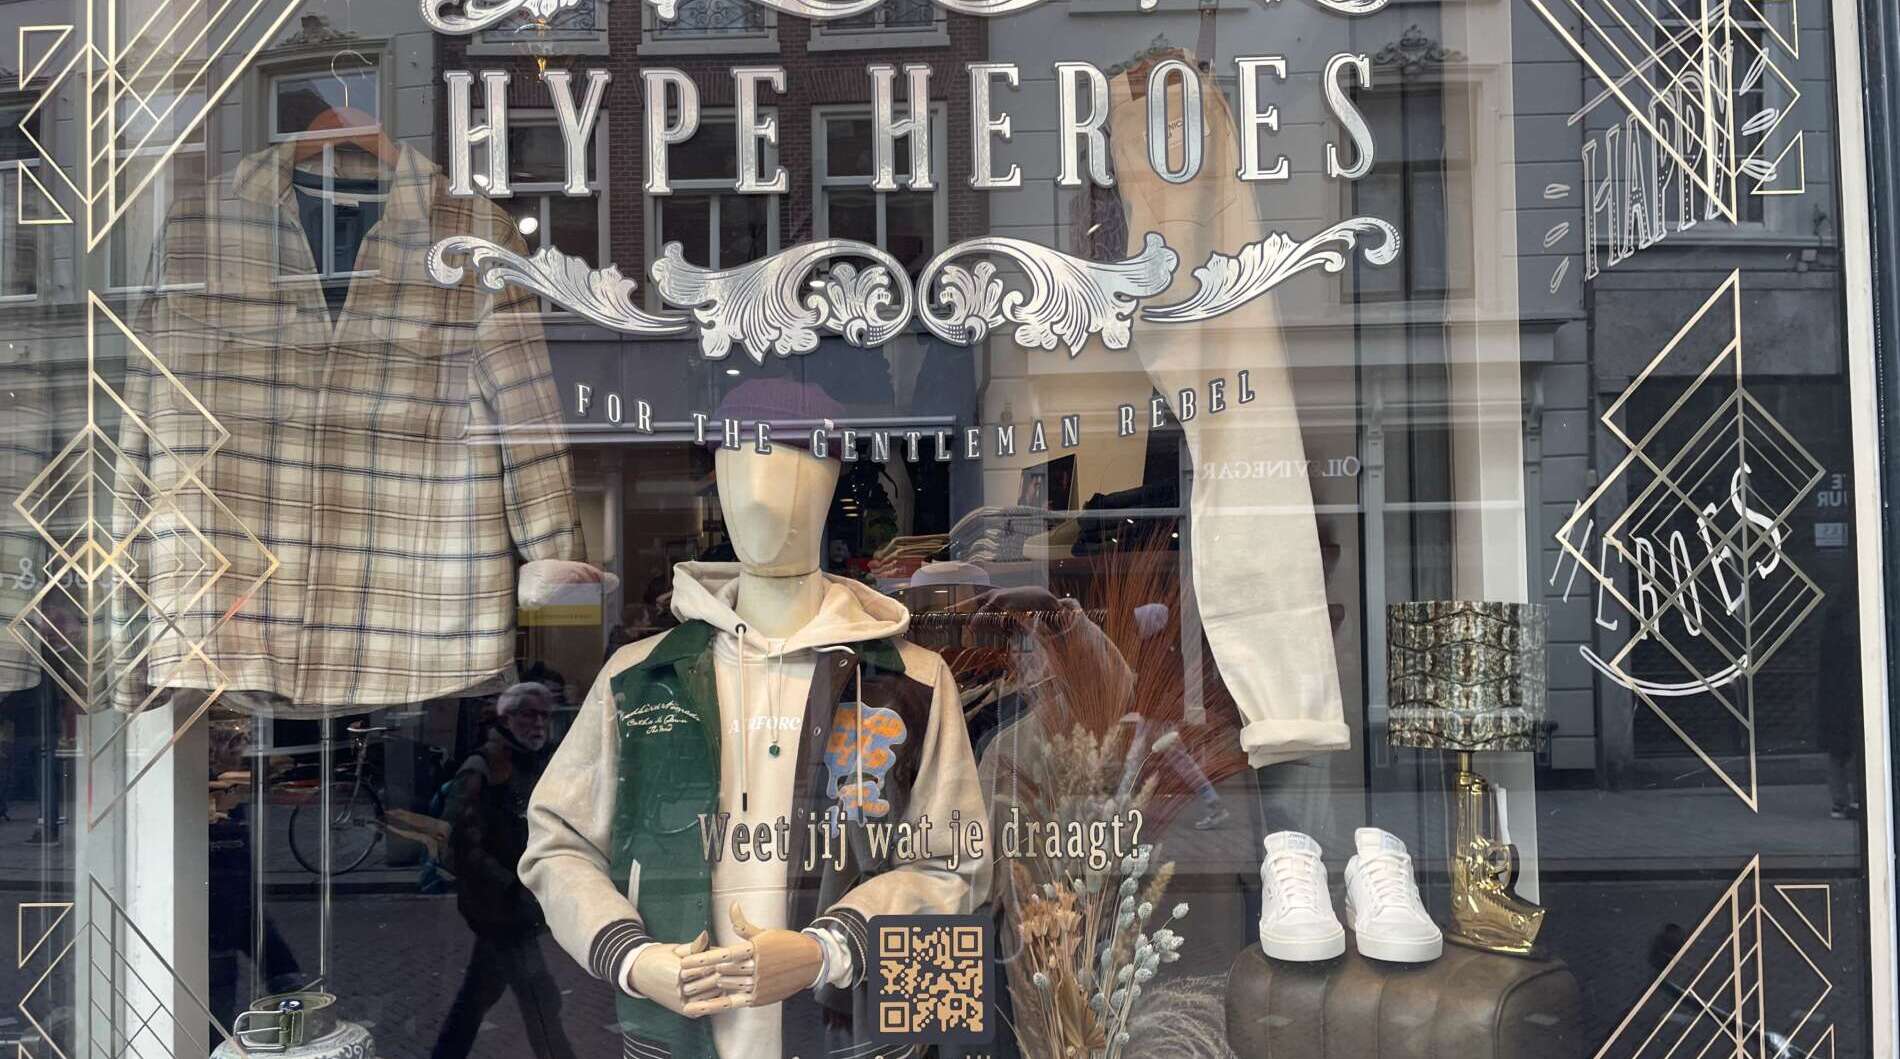 Hype Heroes boetieks in Den Bosch